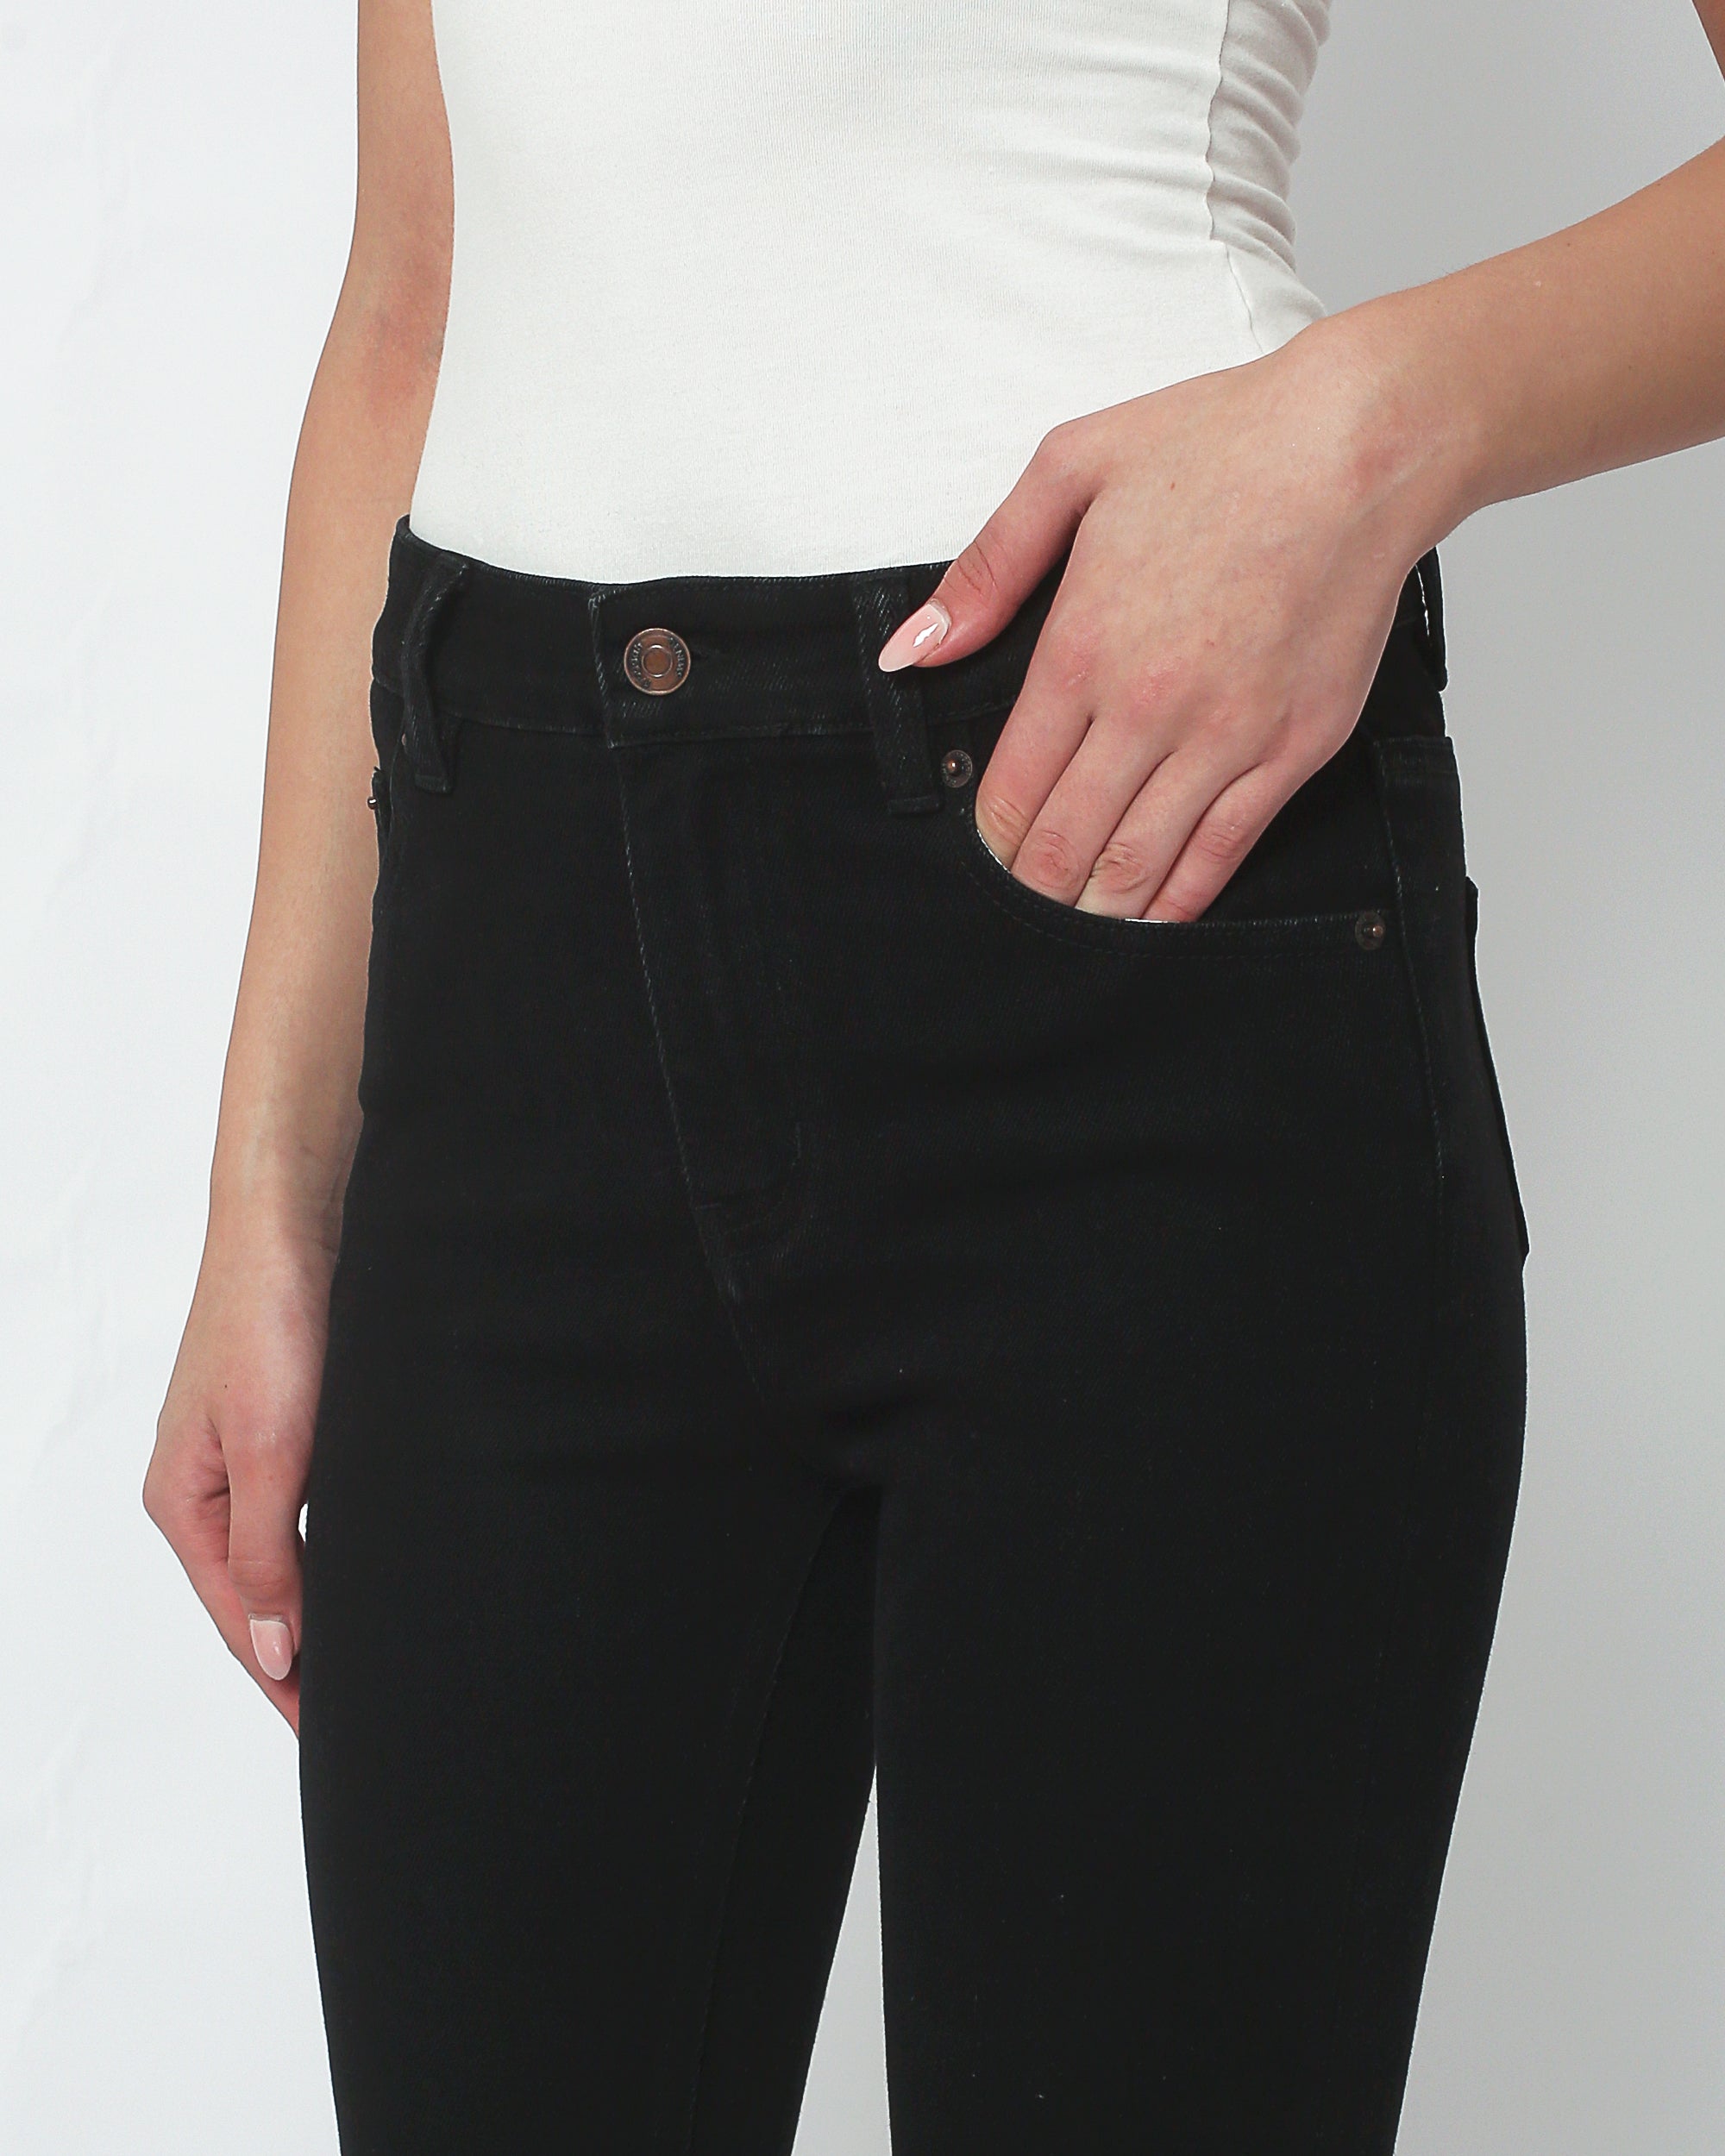 J Brand 815 Mid Rise Super Skinny Blue Jeans Velvet Pants Womens Size 24 |  eBay